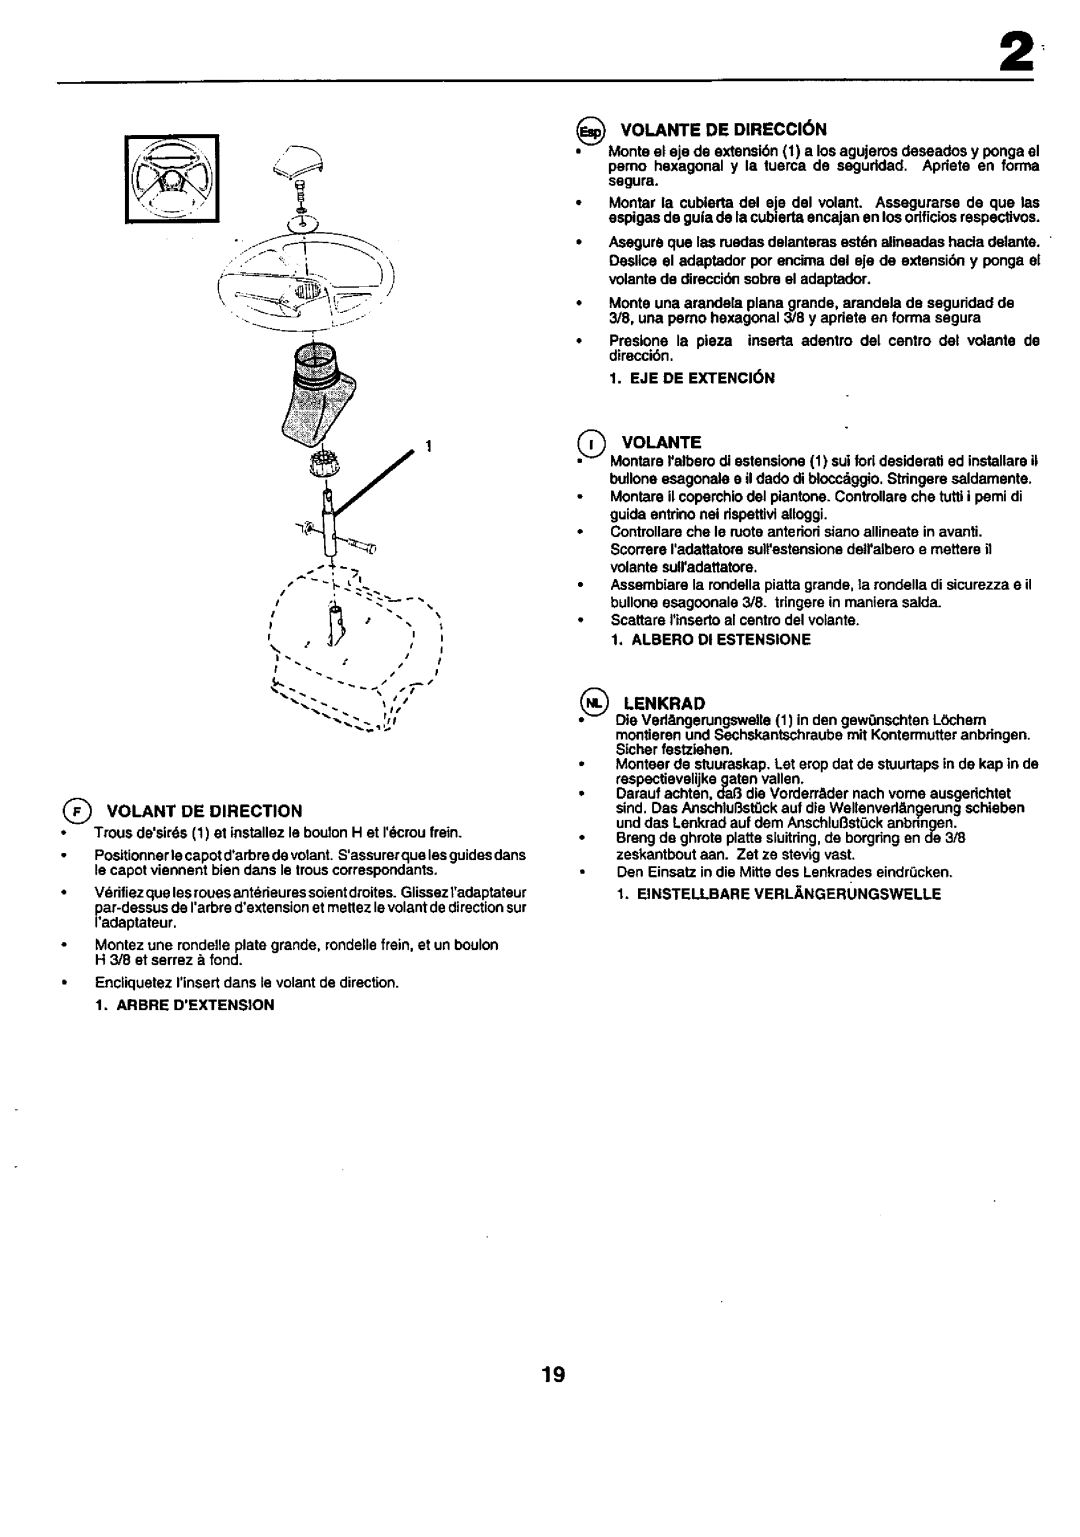 Craftsman 25949 instruction manual _ VOLANTE DE DIRECCI6N 